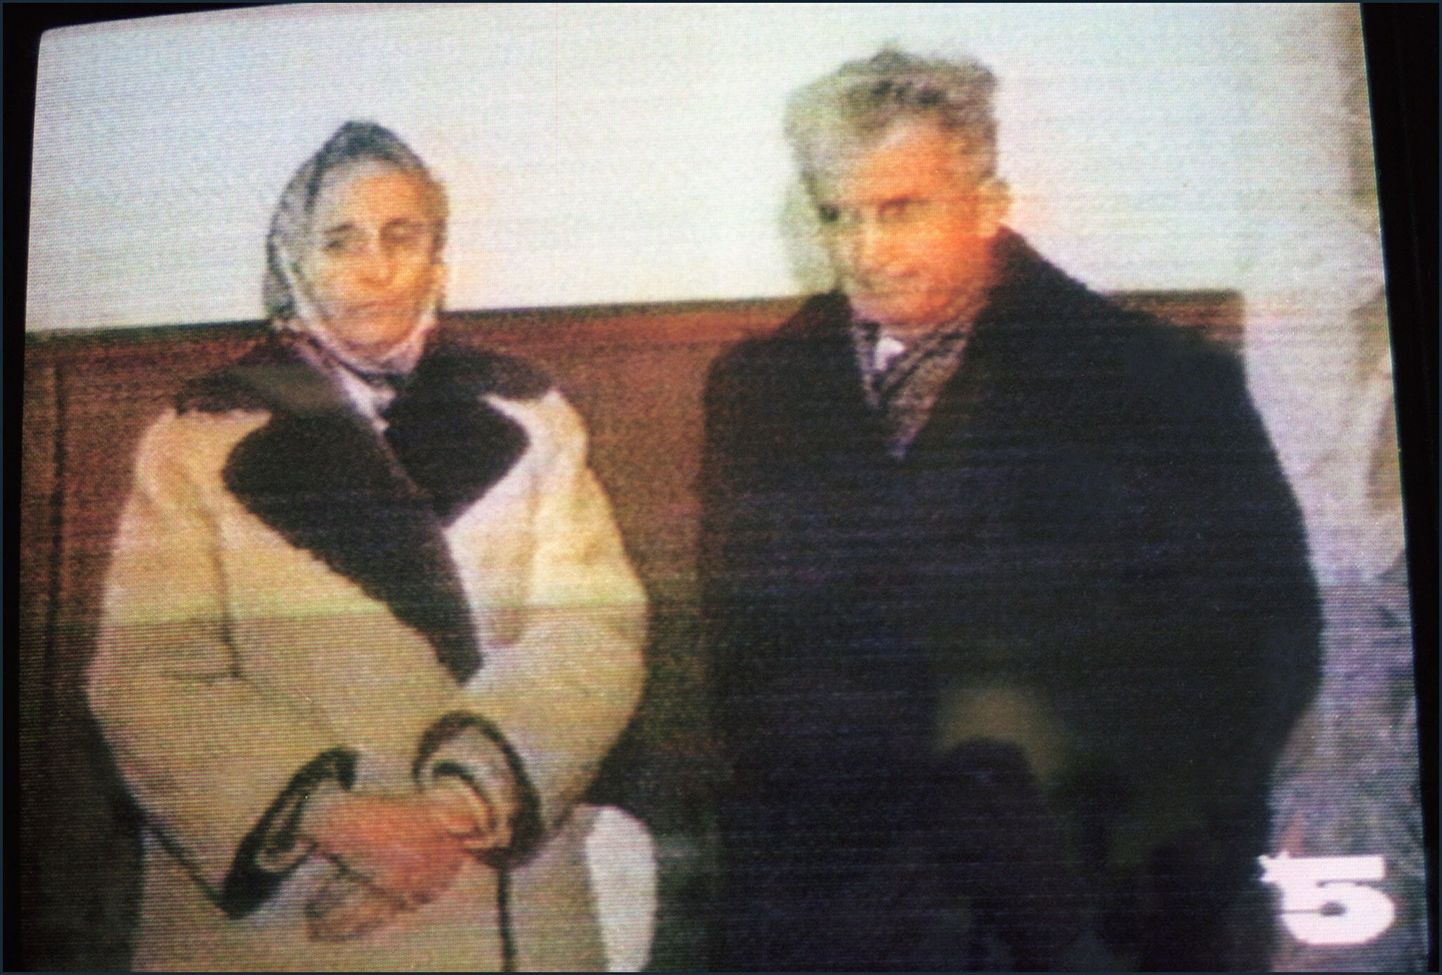 Telepilt Nicolae Ceausescust ja ta naisest Elenast